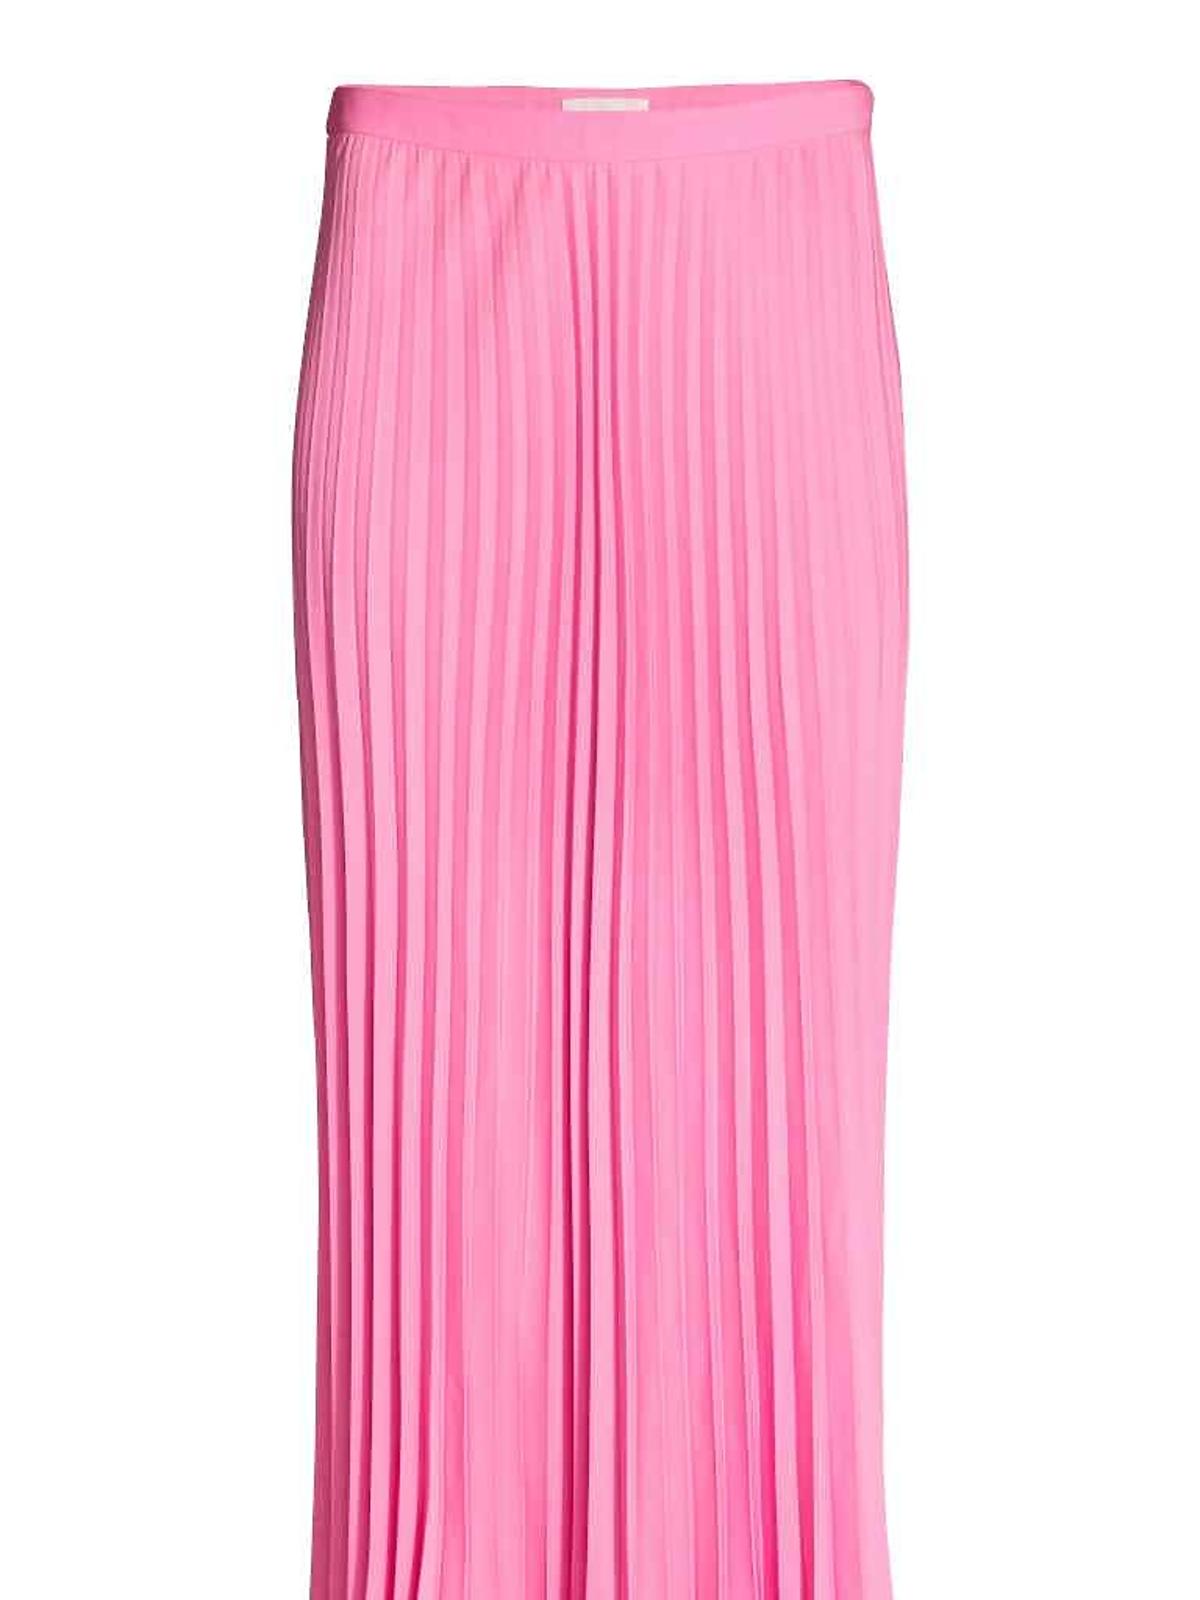 Różowa plisowana spódnica, H&M, 129,90 zł